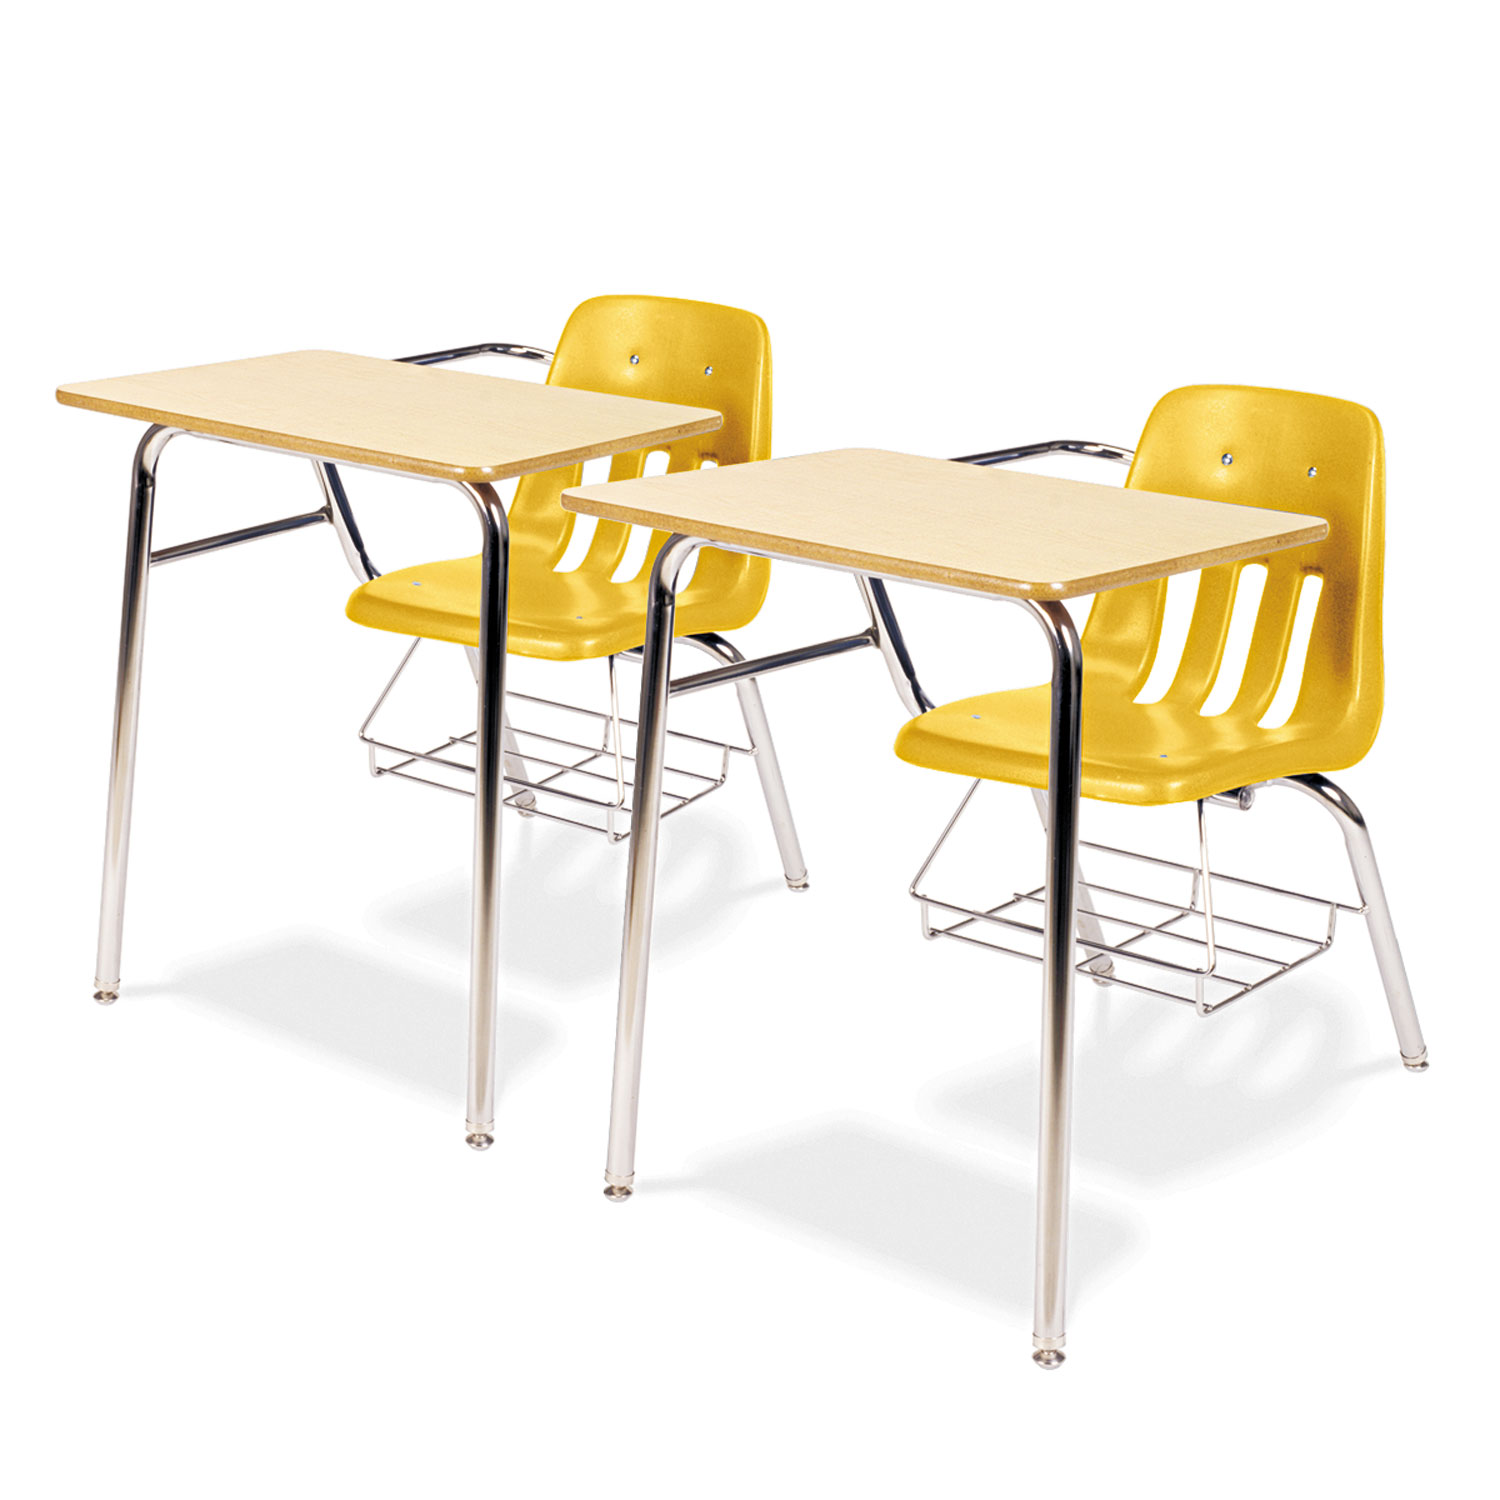 9400 Series Chair Desk, 21w x 33-1/2d x 30h, Fusion Maple/Squash, 2/Carton